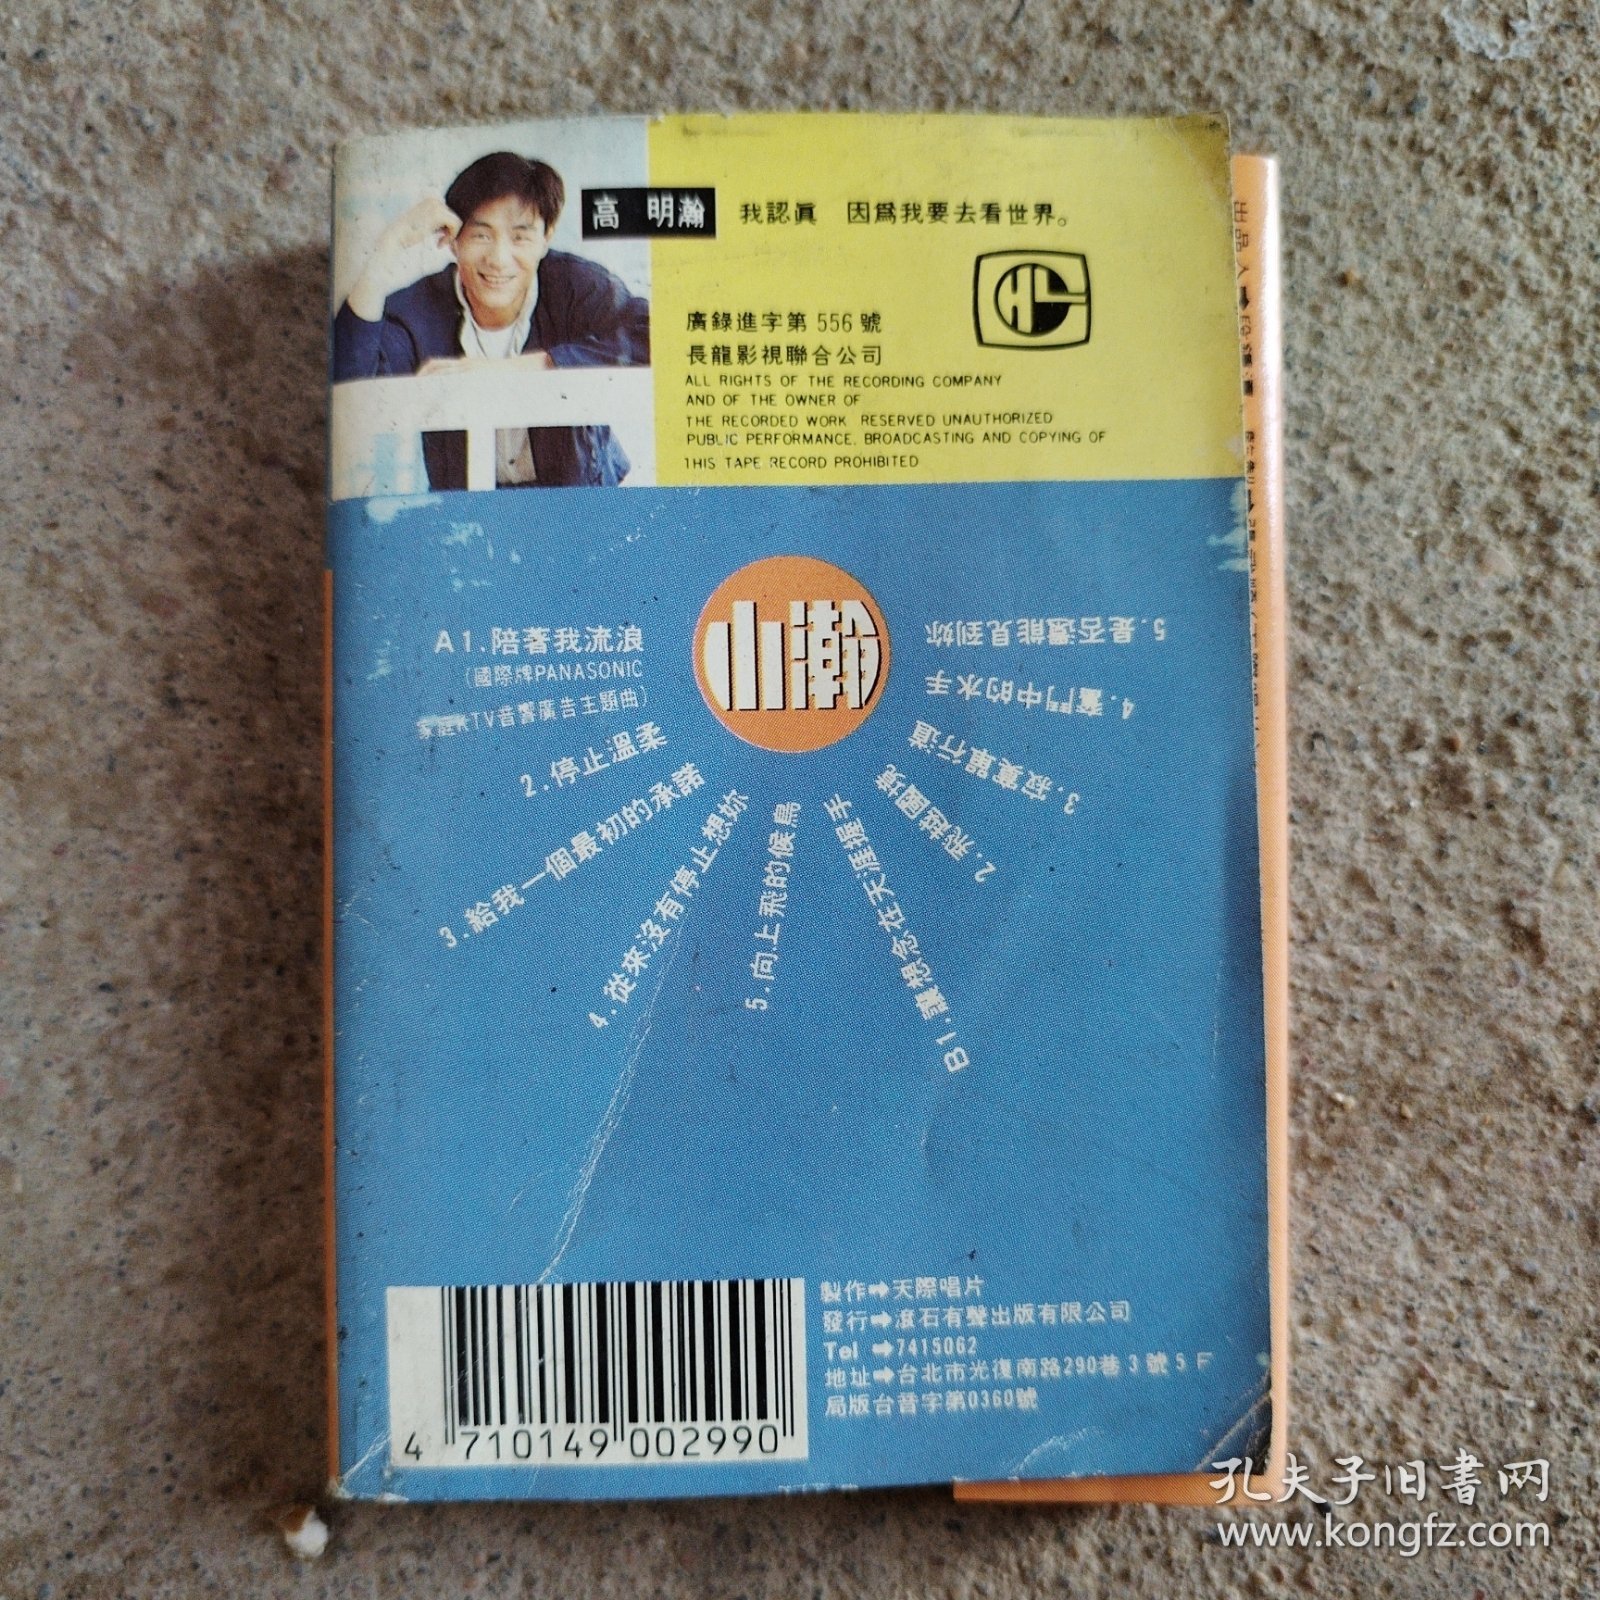 高明瀚专辑磁带，外包装盒歌词纸都在，标价为一盒磁带的价格